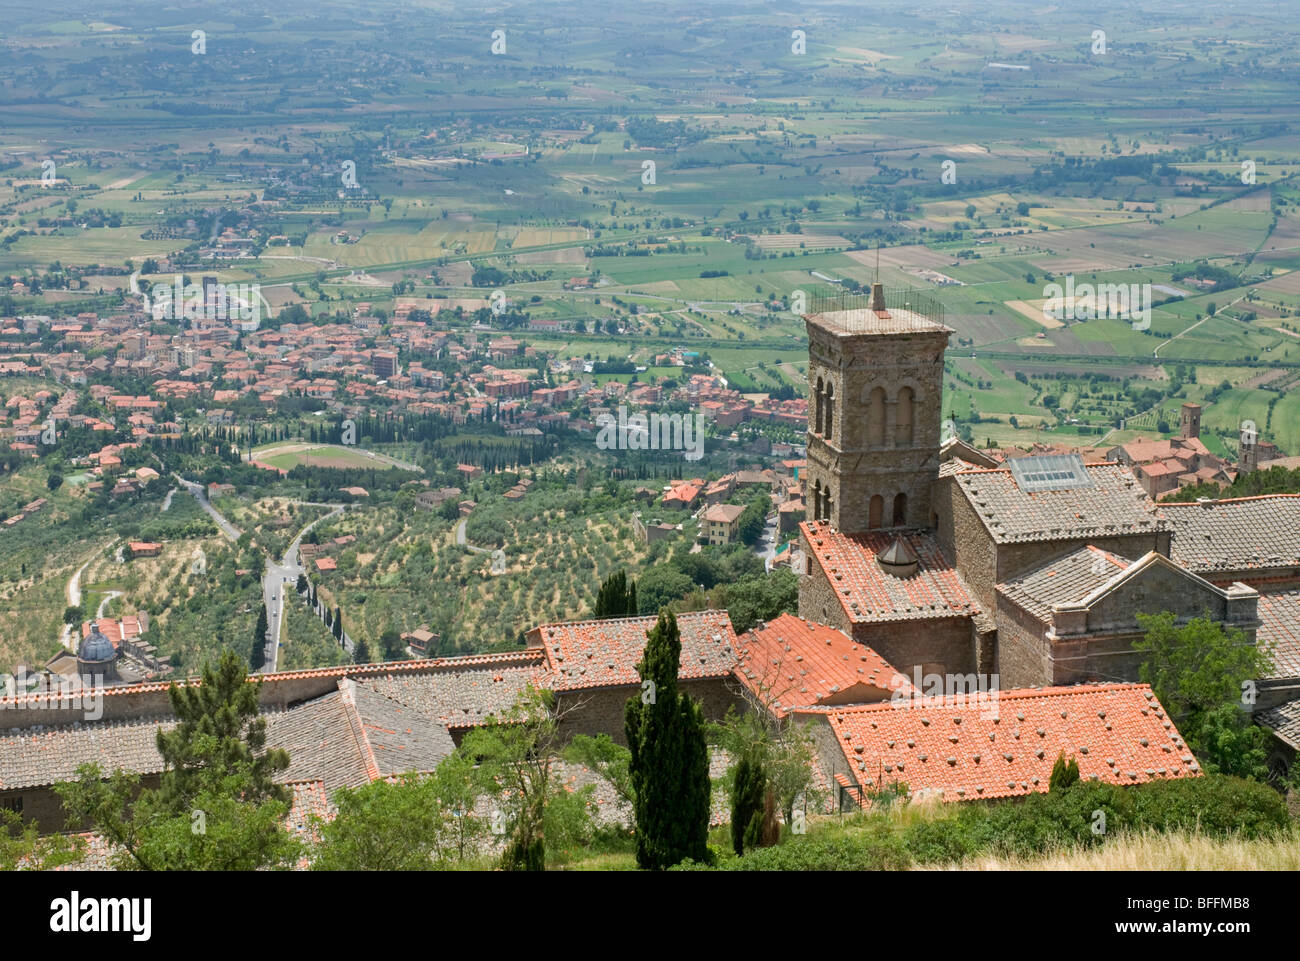 Looking out across the Valdichiana plain from the Fortezza Medicea above Cortona, Tuscany Stock Photo